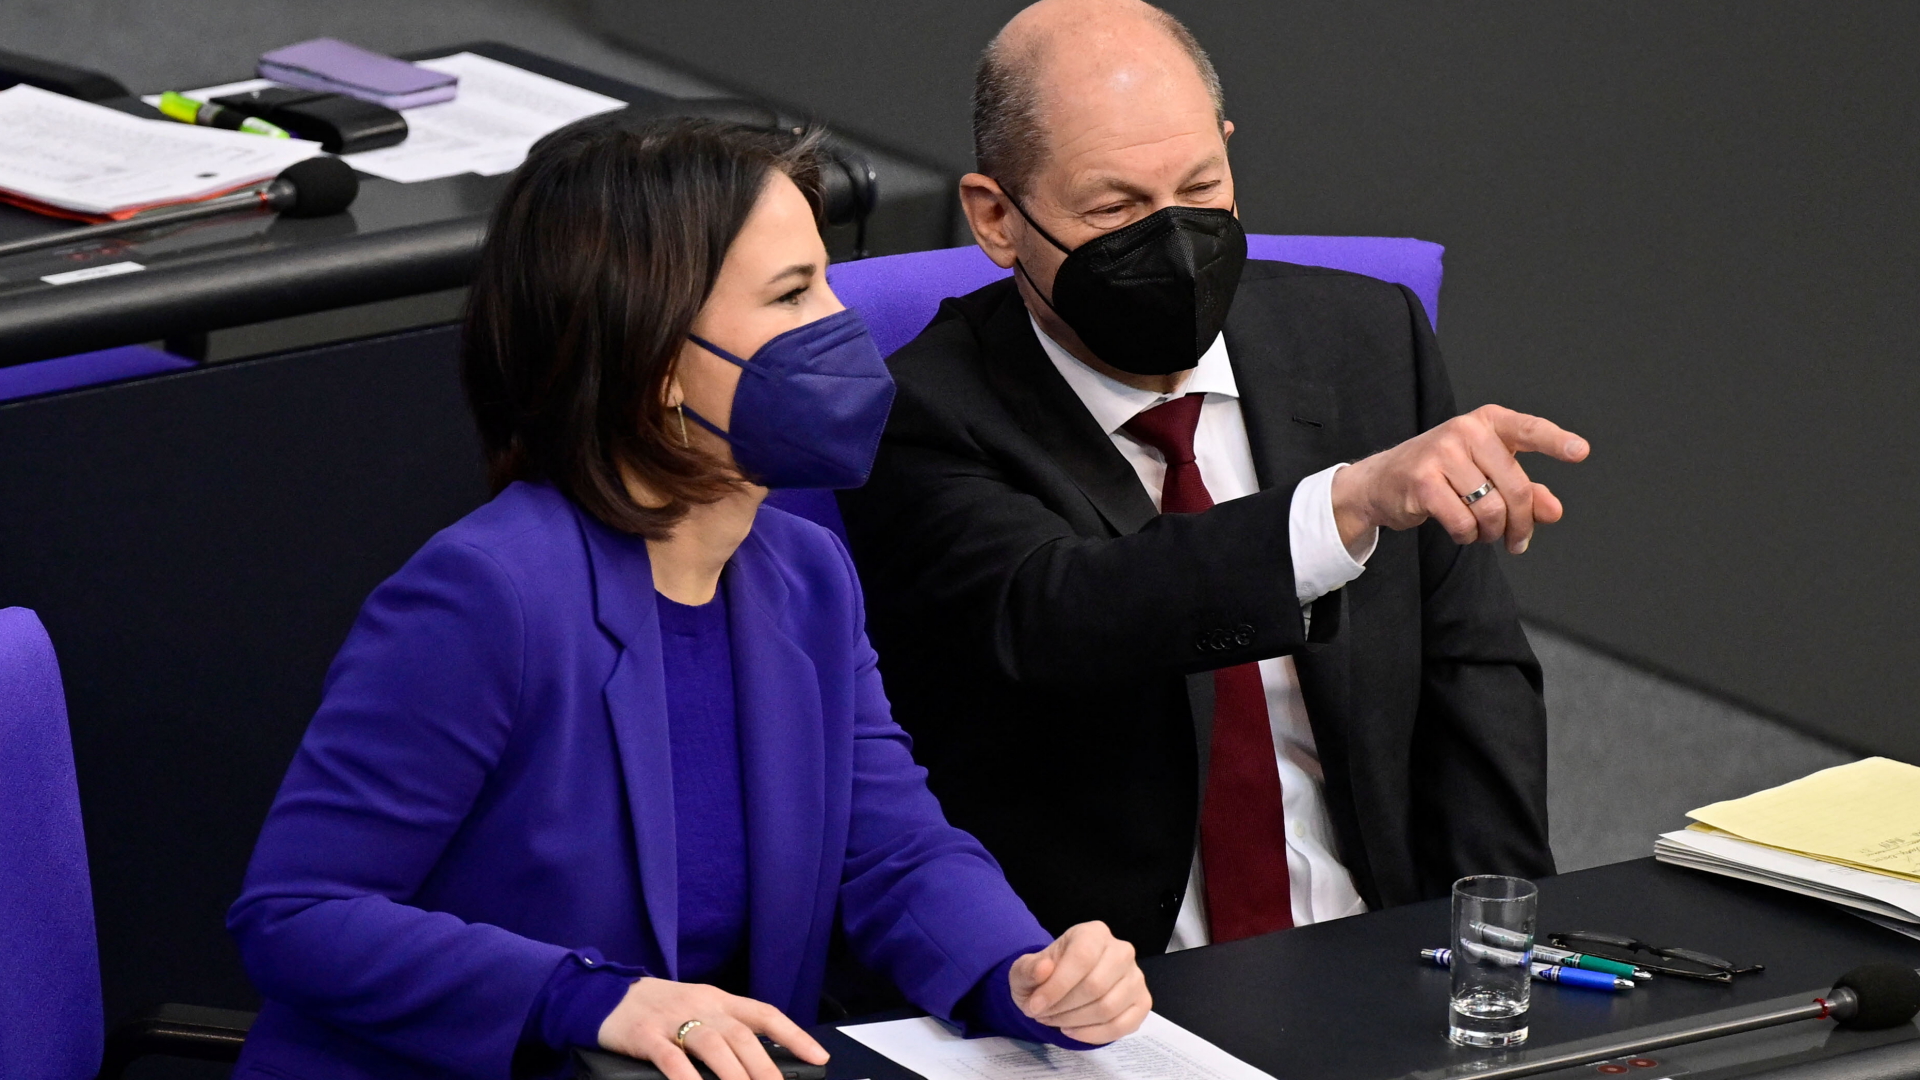 Bundeskanzler Olaf Scholz deutet auf etwas bei einer Sitzung des Bundestages, neben ihm sitzt Bundesaußenministerin Annalena Baerbock. Beide tragen Corona-Schutzmasken. | AFP